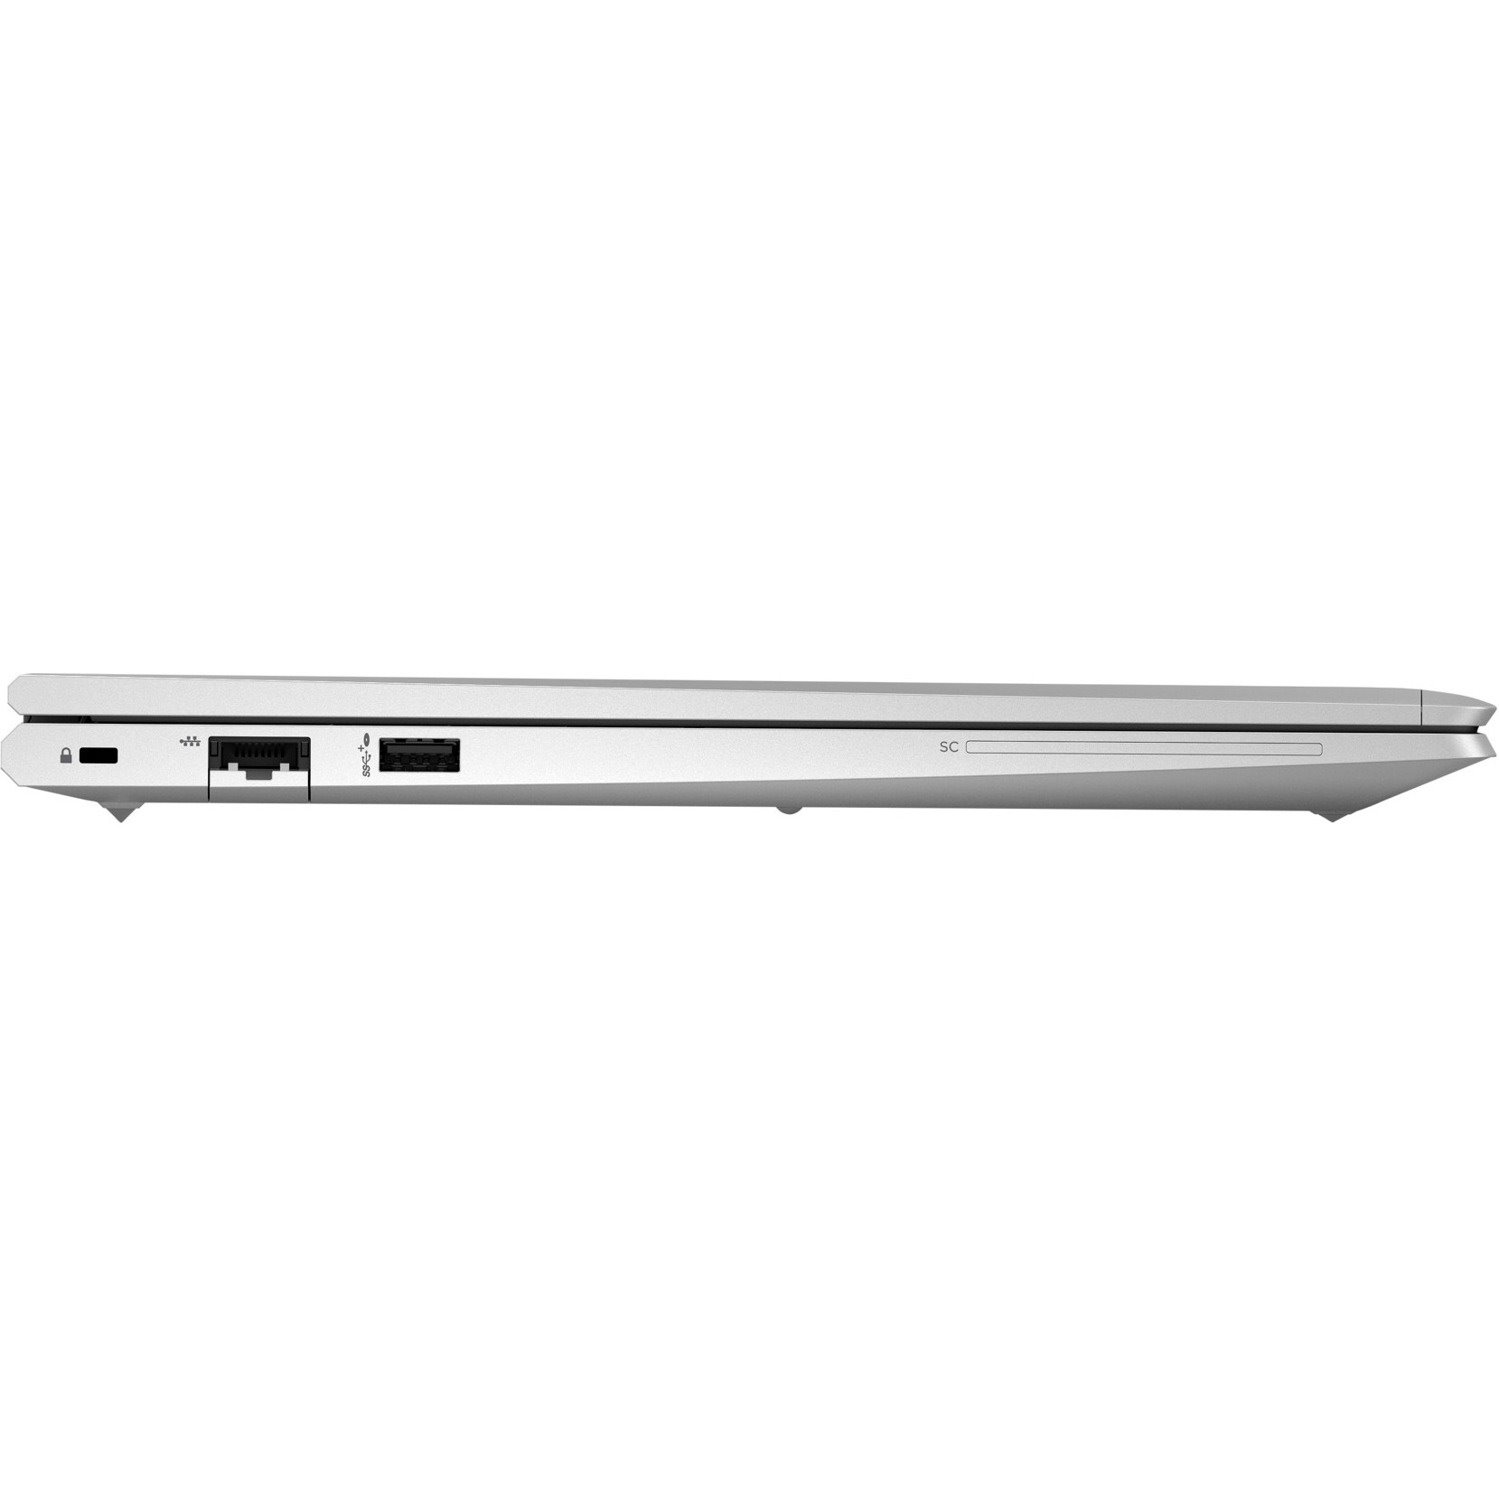 HP ProBook 650 G8 15.6" Notebook - Intel Core i7 11th Gen i7-1185G7 Quad-core (4 Core) - 32 GB Total RAM - 1 TB HDD